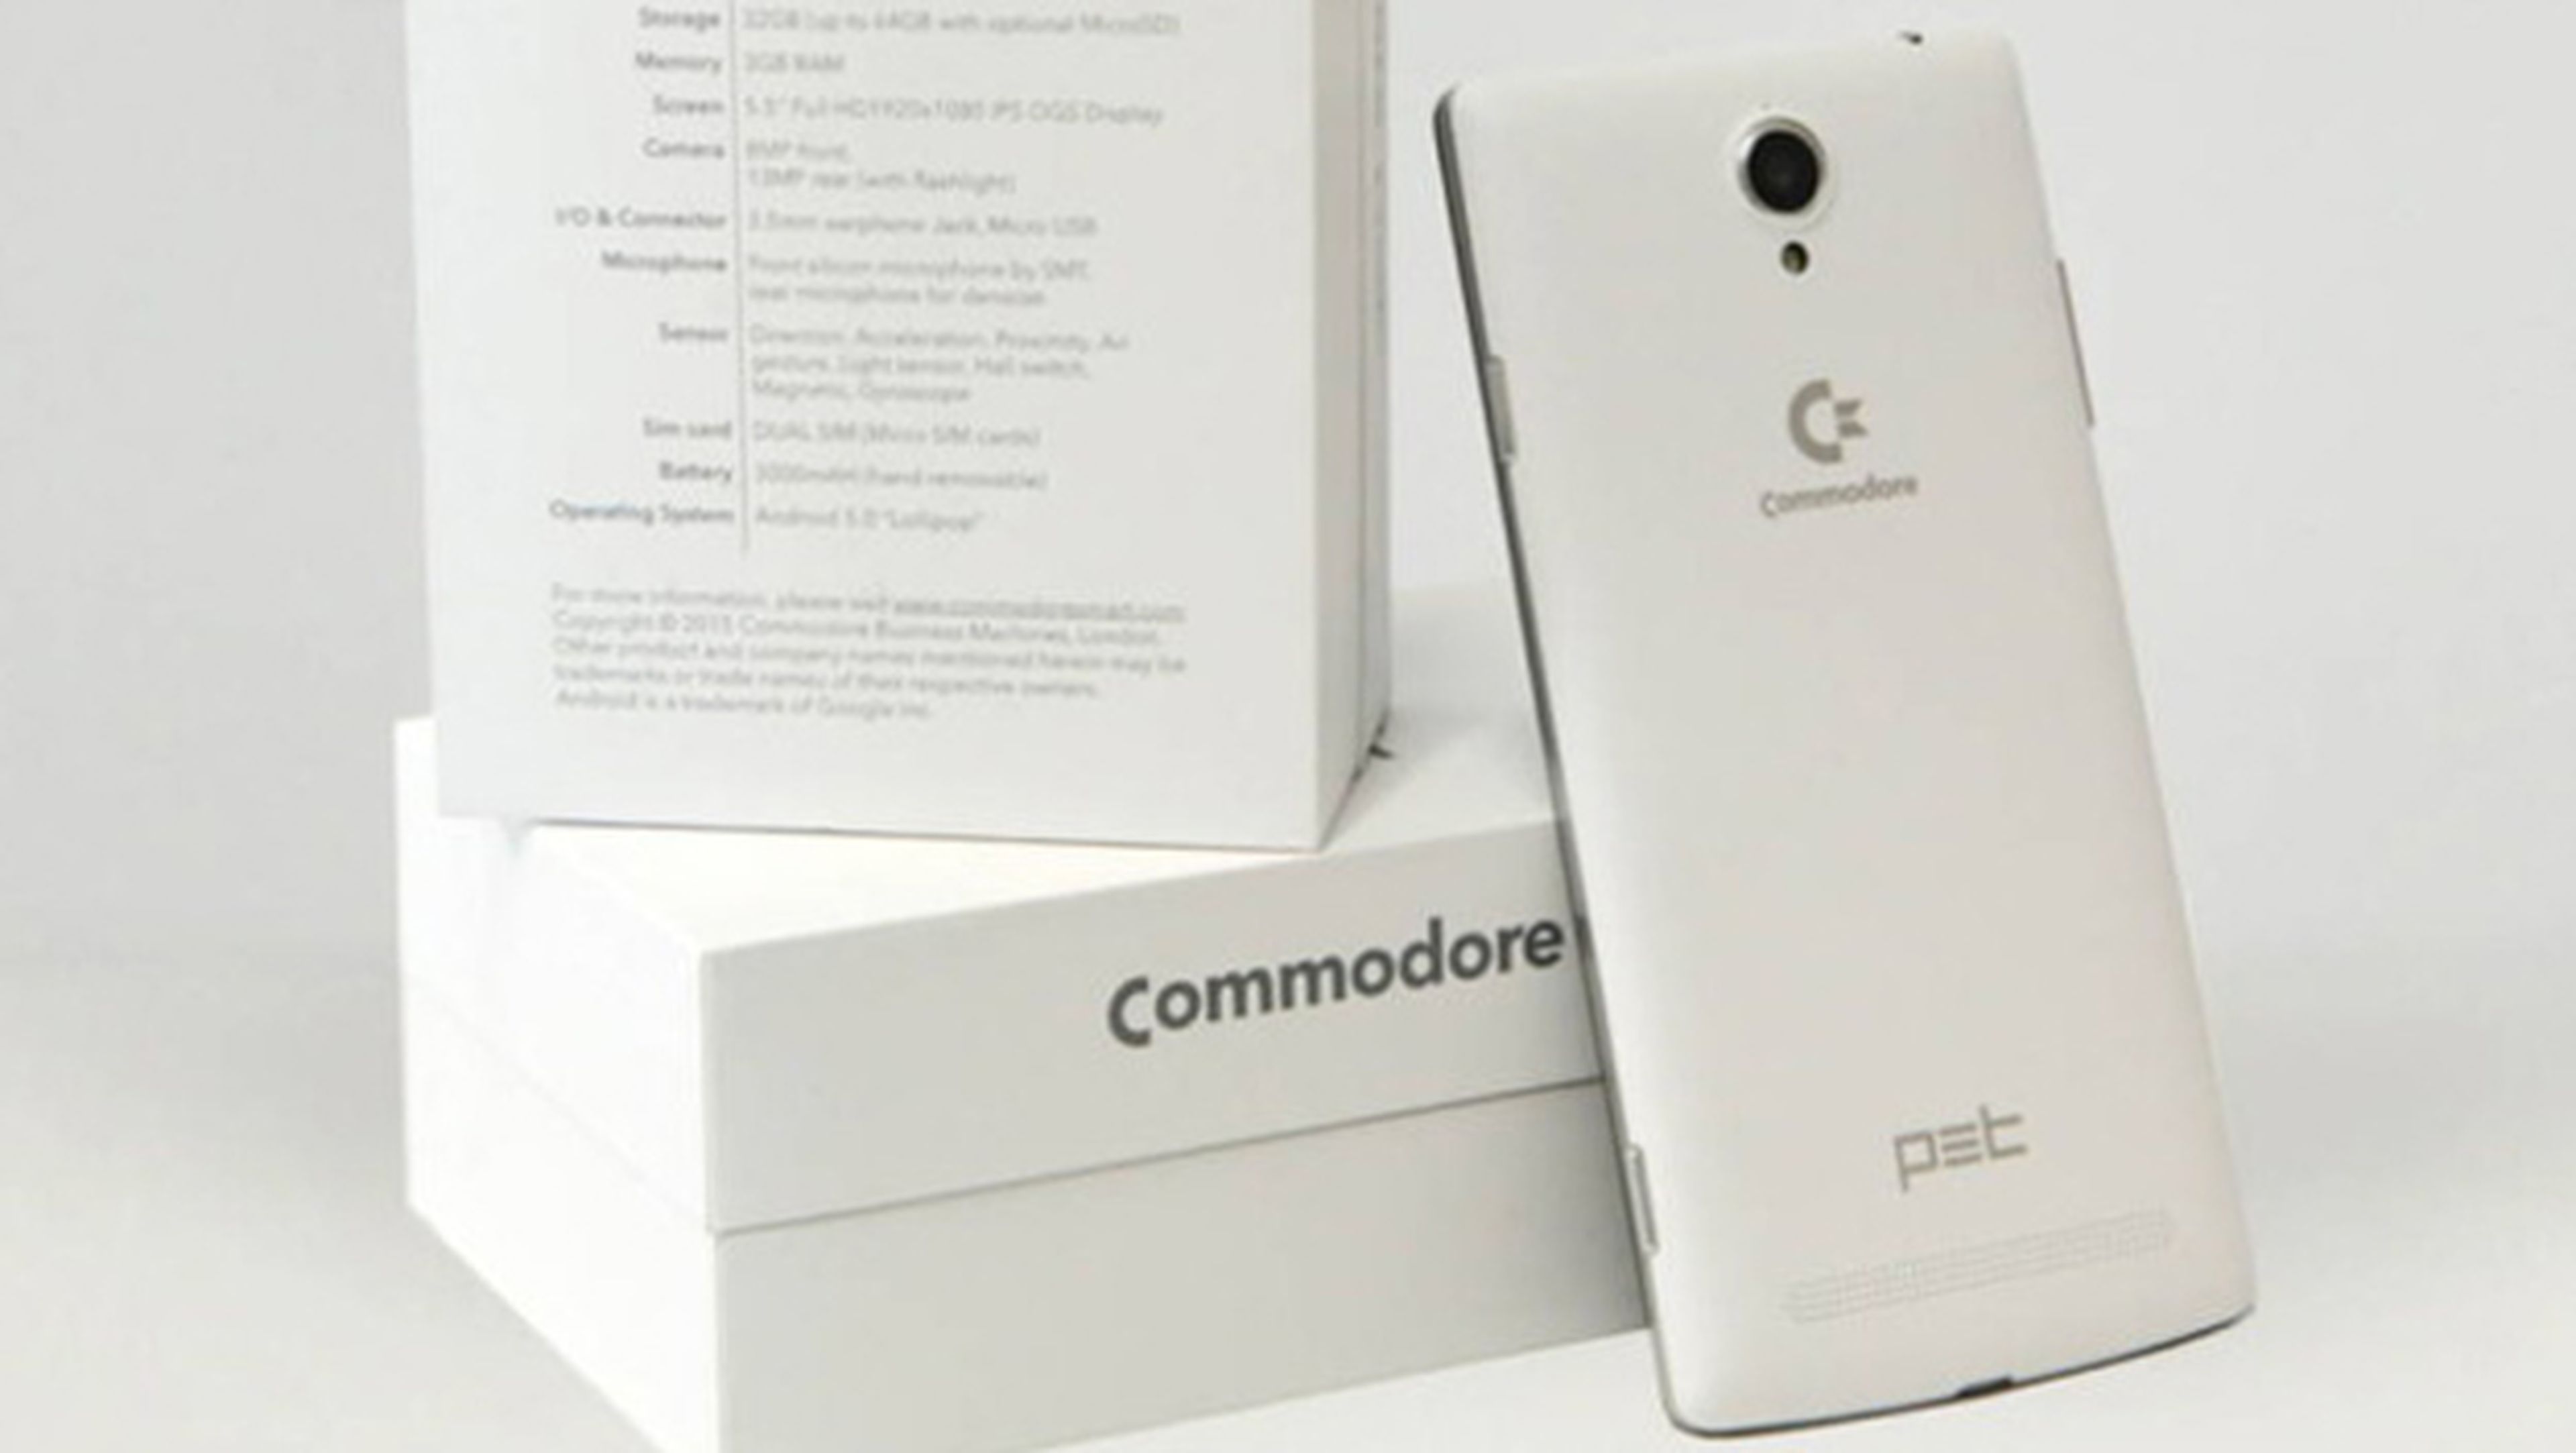 El móvil de Commodore: Pet